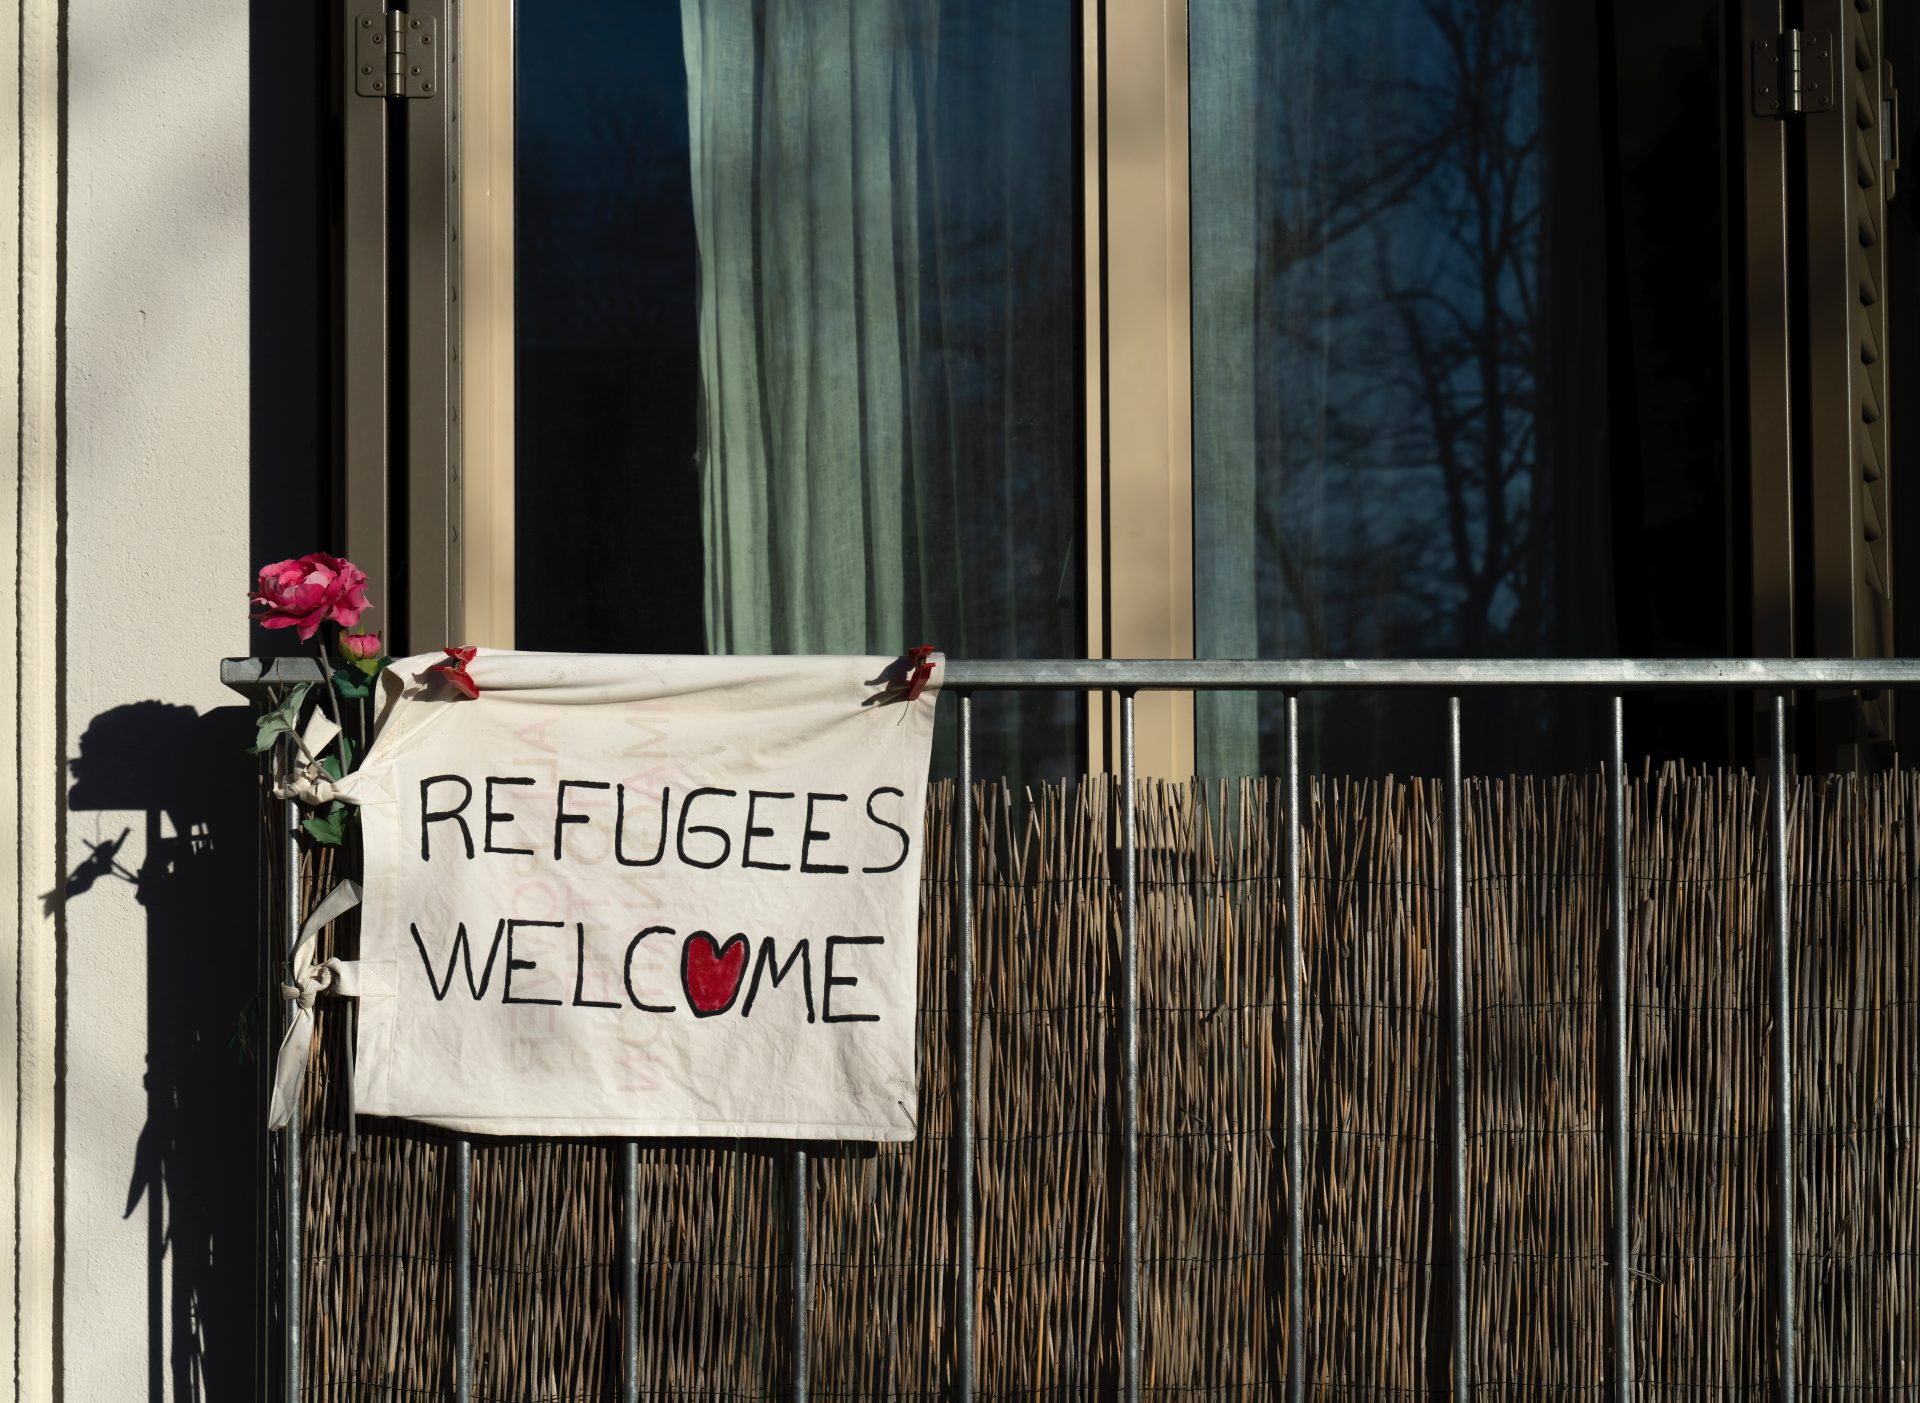 Un balcone con a sinistra appeso alla ringhiera un cartello "refugees welcome", con un cuore al posto della o e una rosa appesa vicino